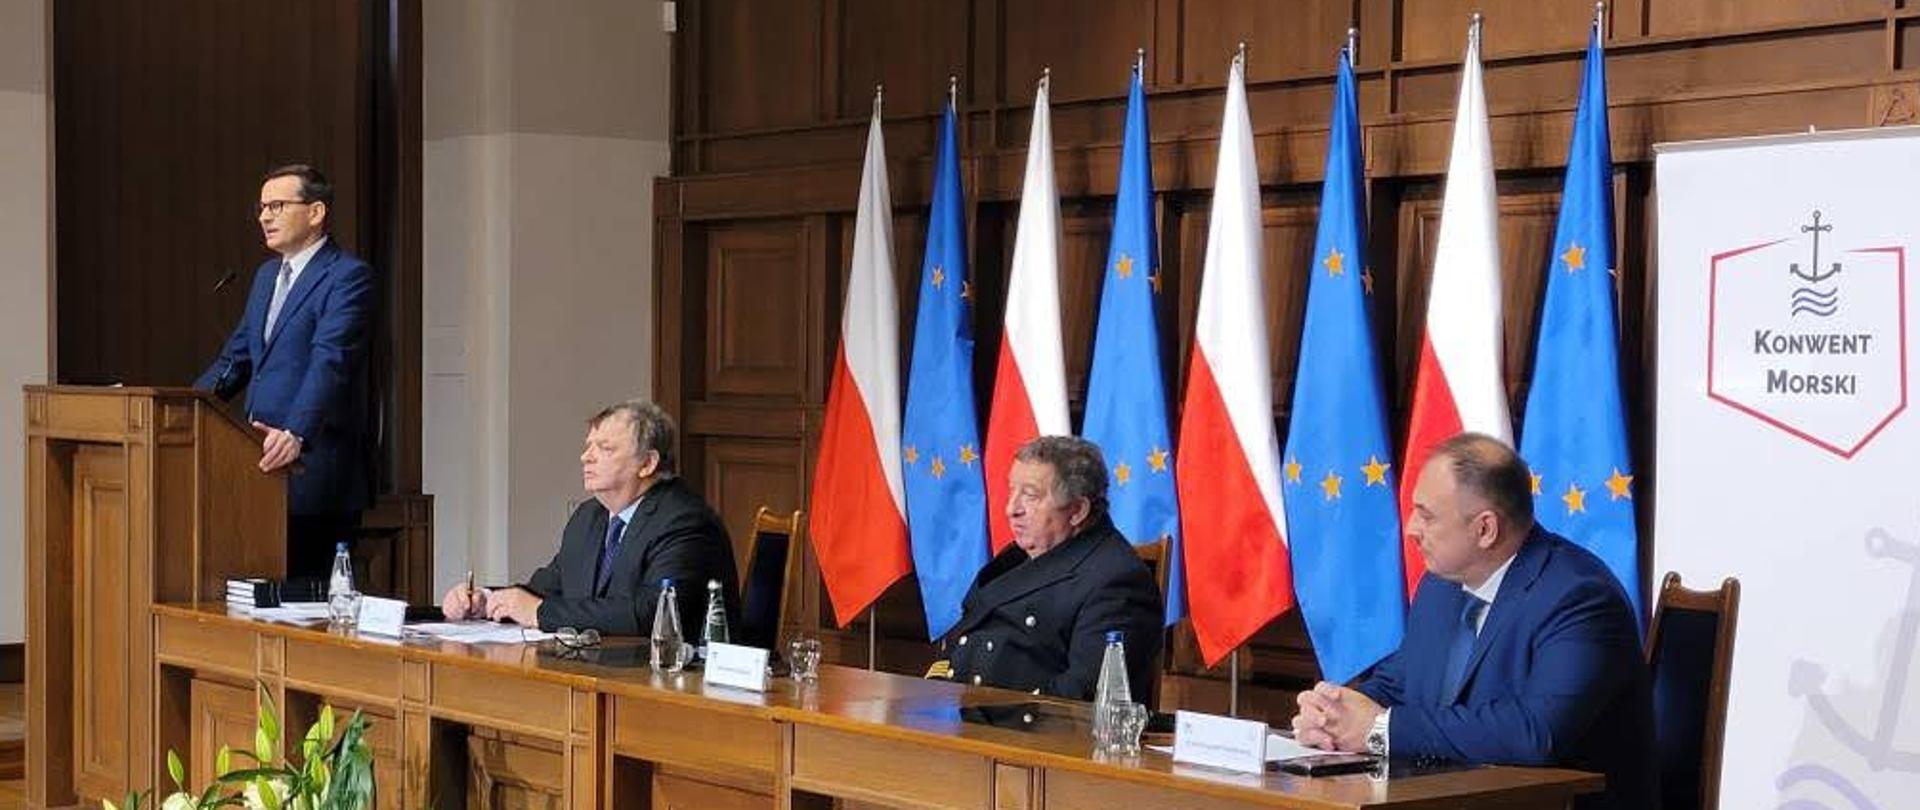 Premier Polski stoi przed mównicą i przemawia za stołem siedzi trzech mężczyzn za nimi są flagi Unii Europejskiej oraz Polski.